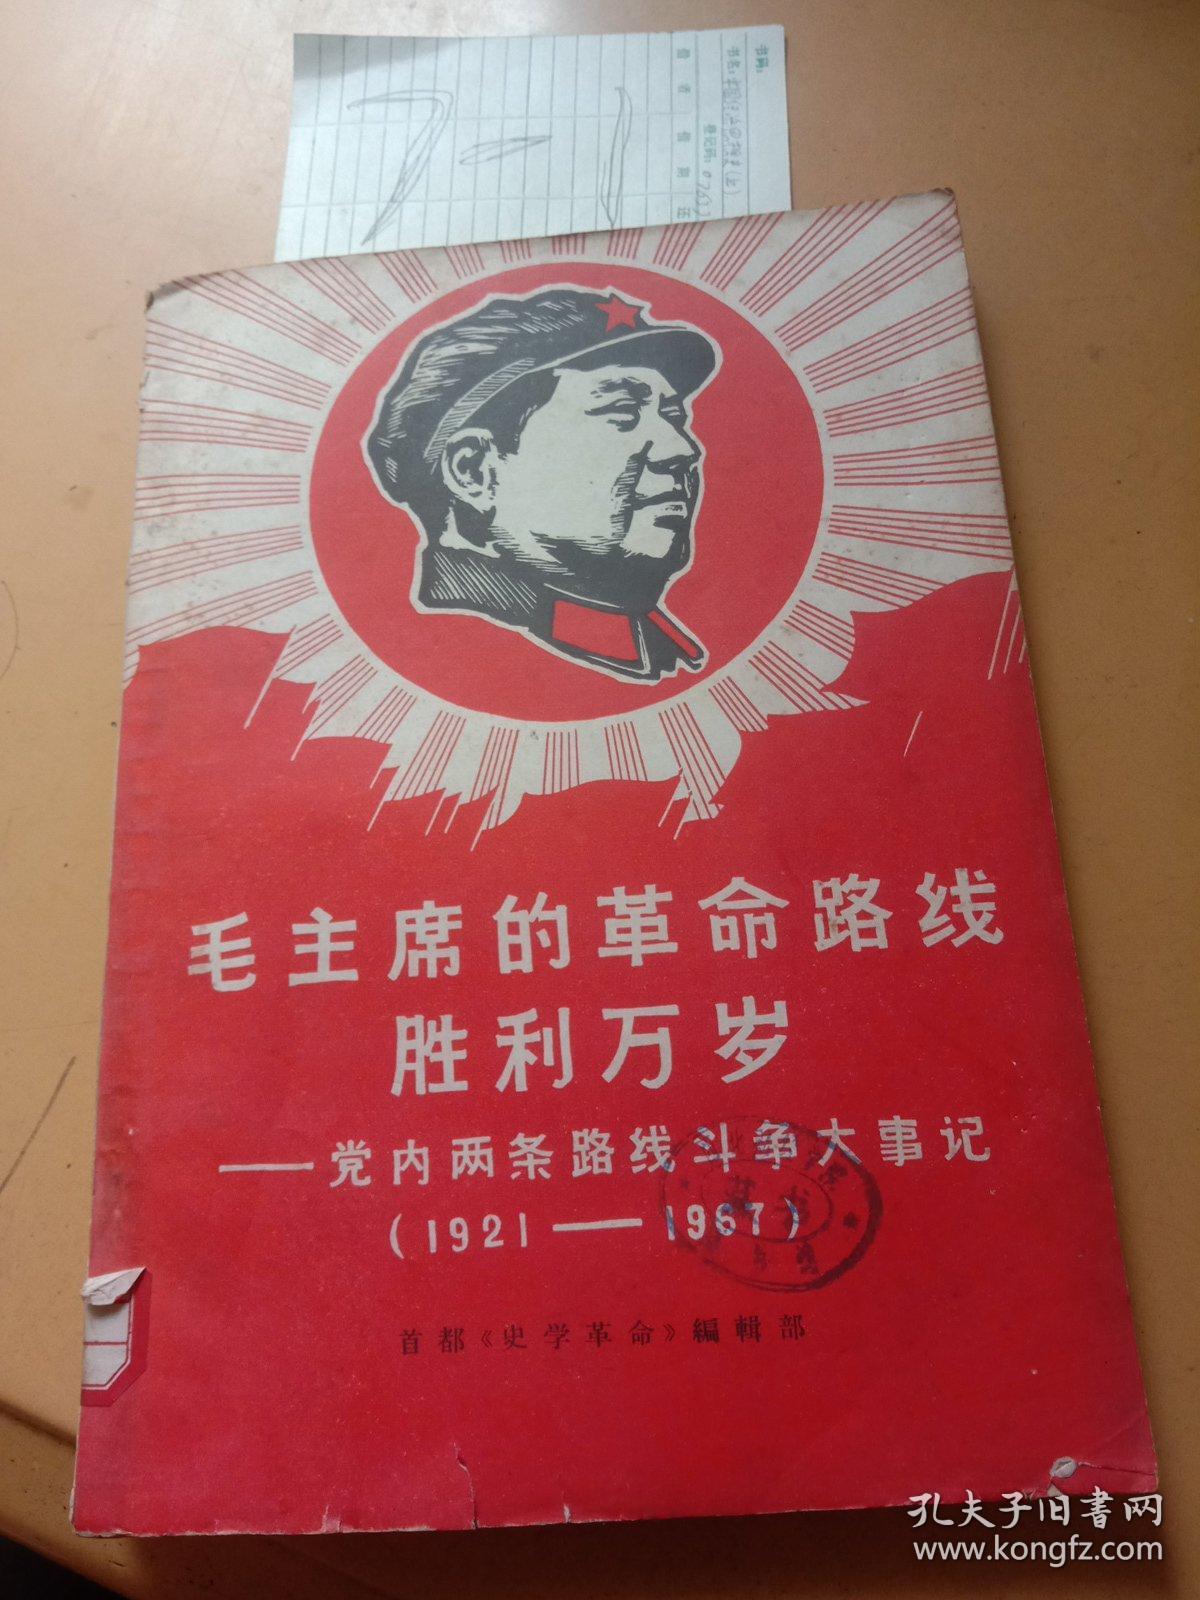 毛主席的革命路线，胜利万岁党内两条路线斗争大事记